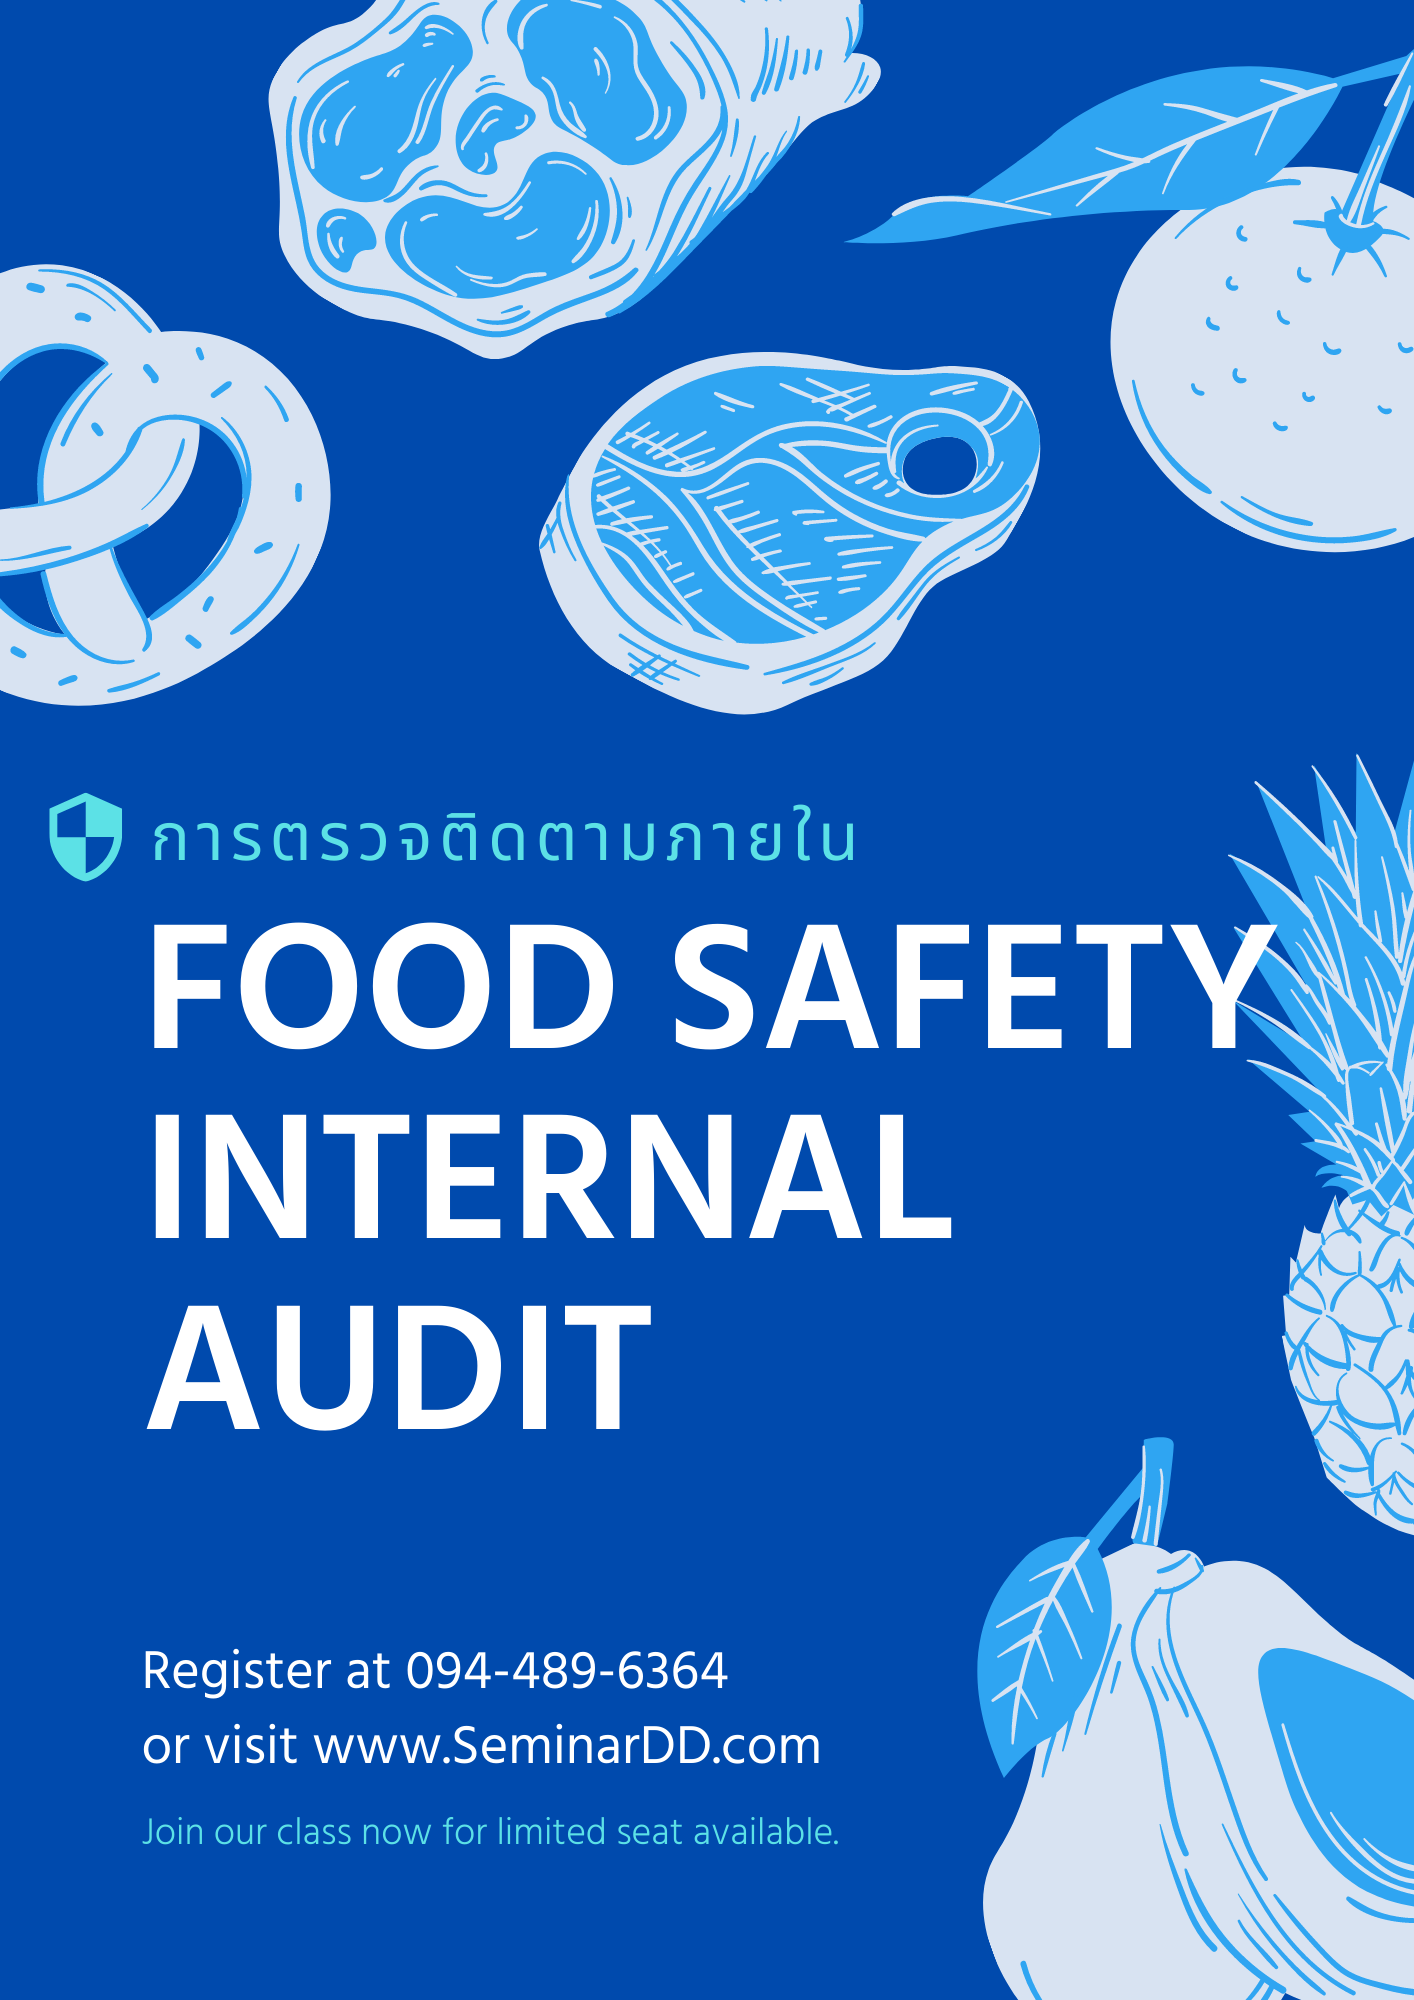 การตรวจติดตามภายใน สำหรับระบบ Food Safety และการวิเคราะห์สาเหตุ NC (CAR) อย่างมีประสิทธิภาพ (Food Safety Internal Audit)